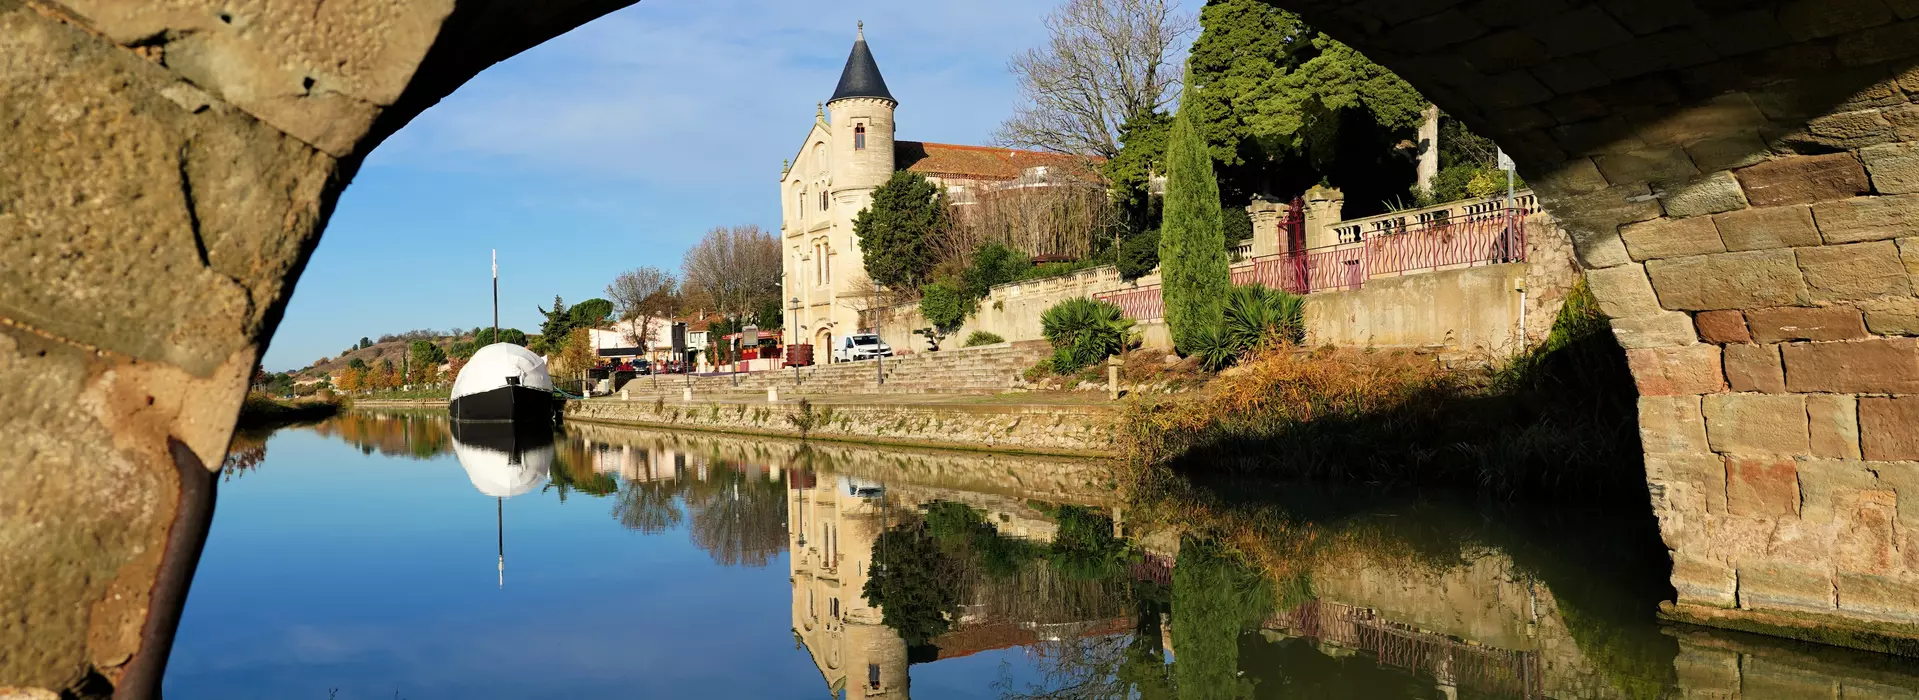 Le bulletin municipal de la commune de Ventenac-en-Minervois (11) Aude